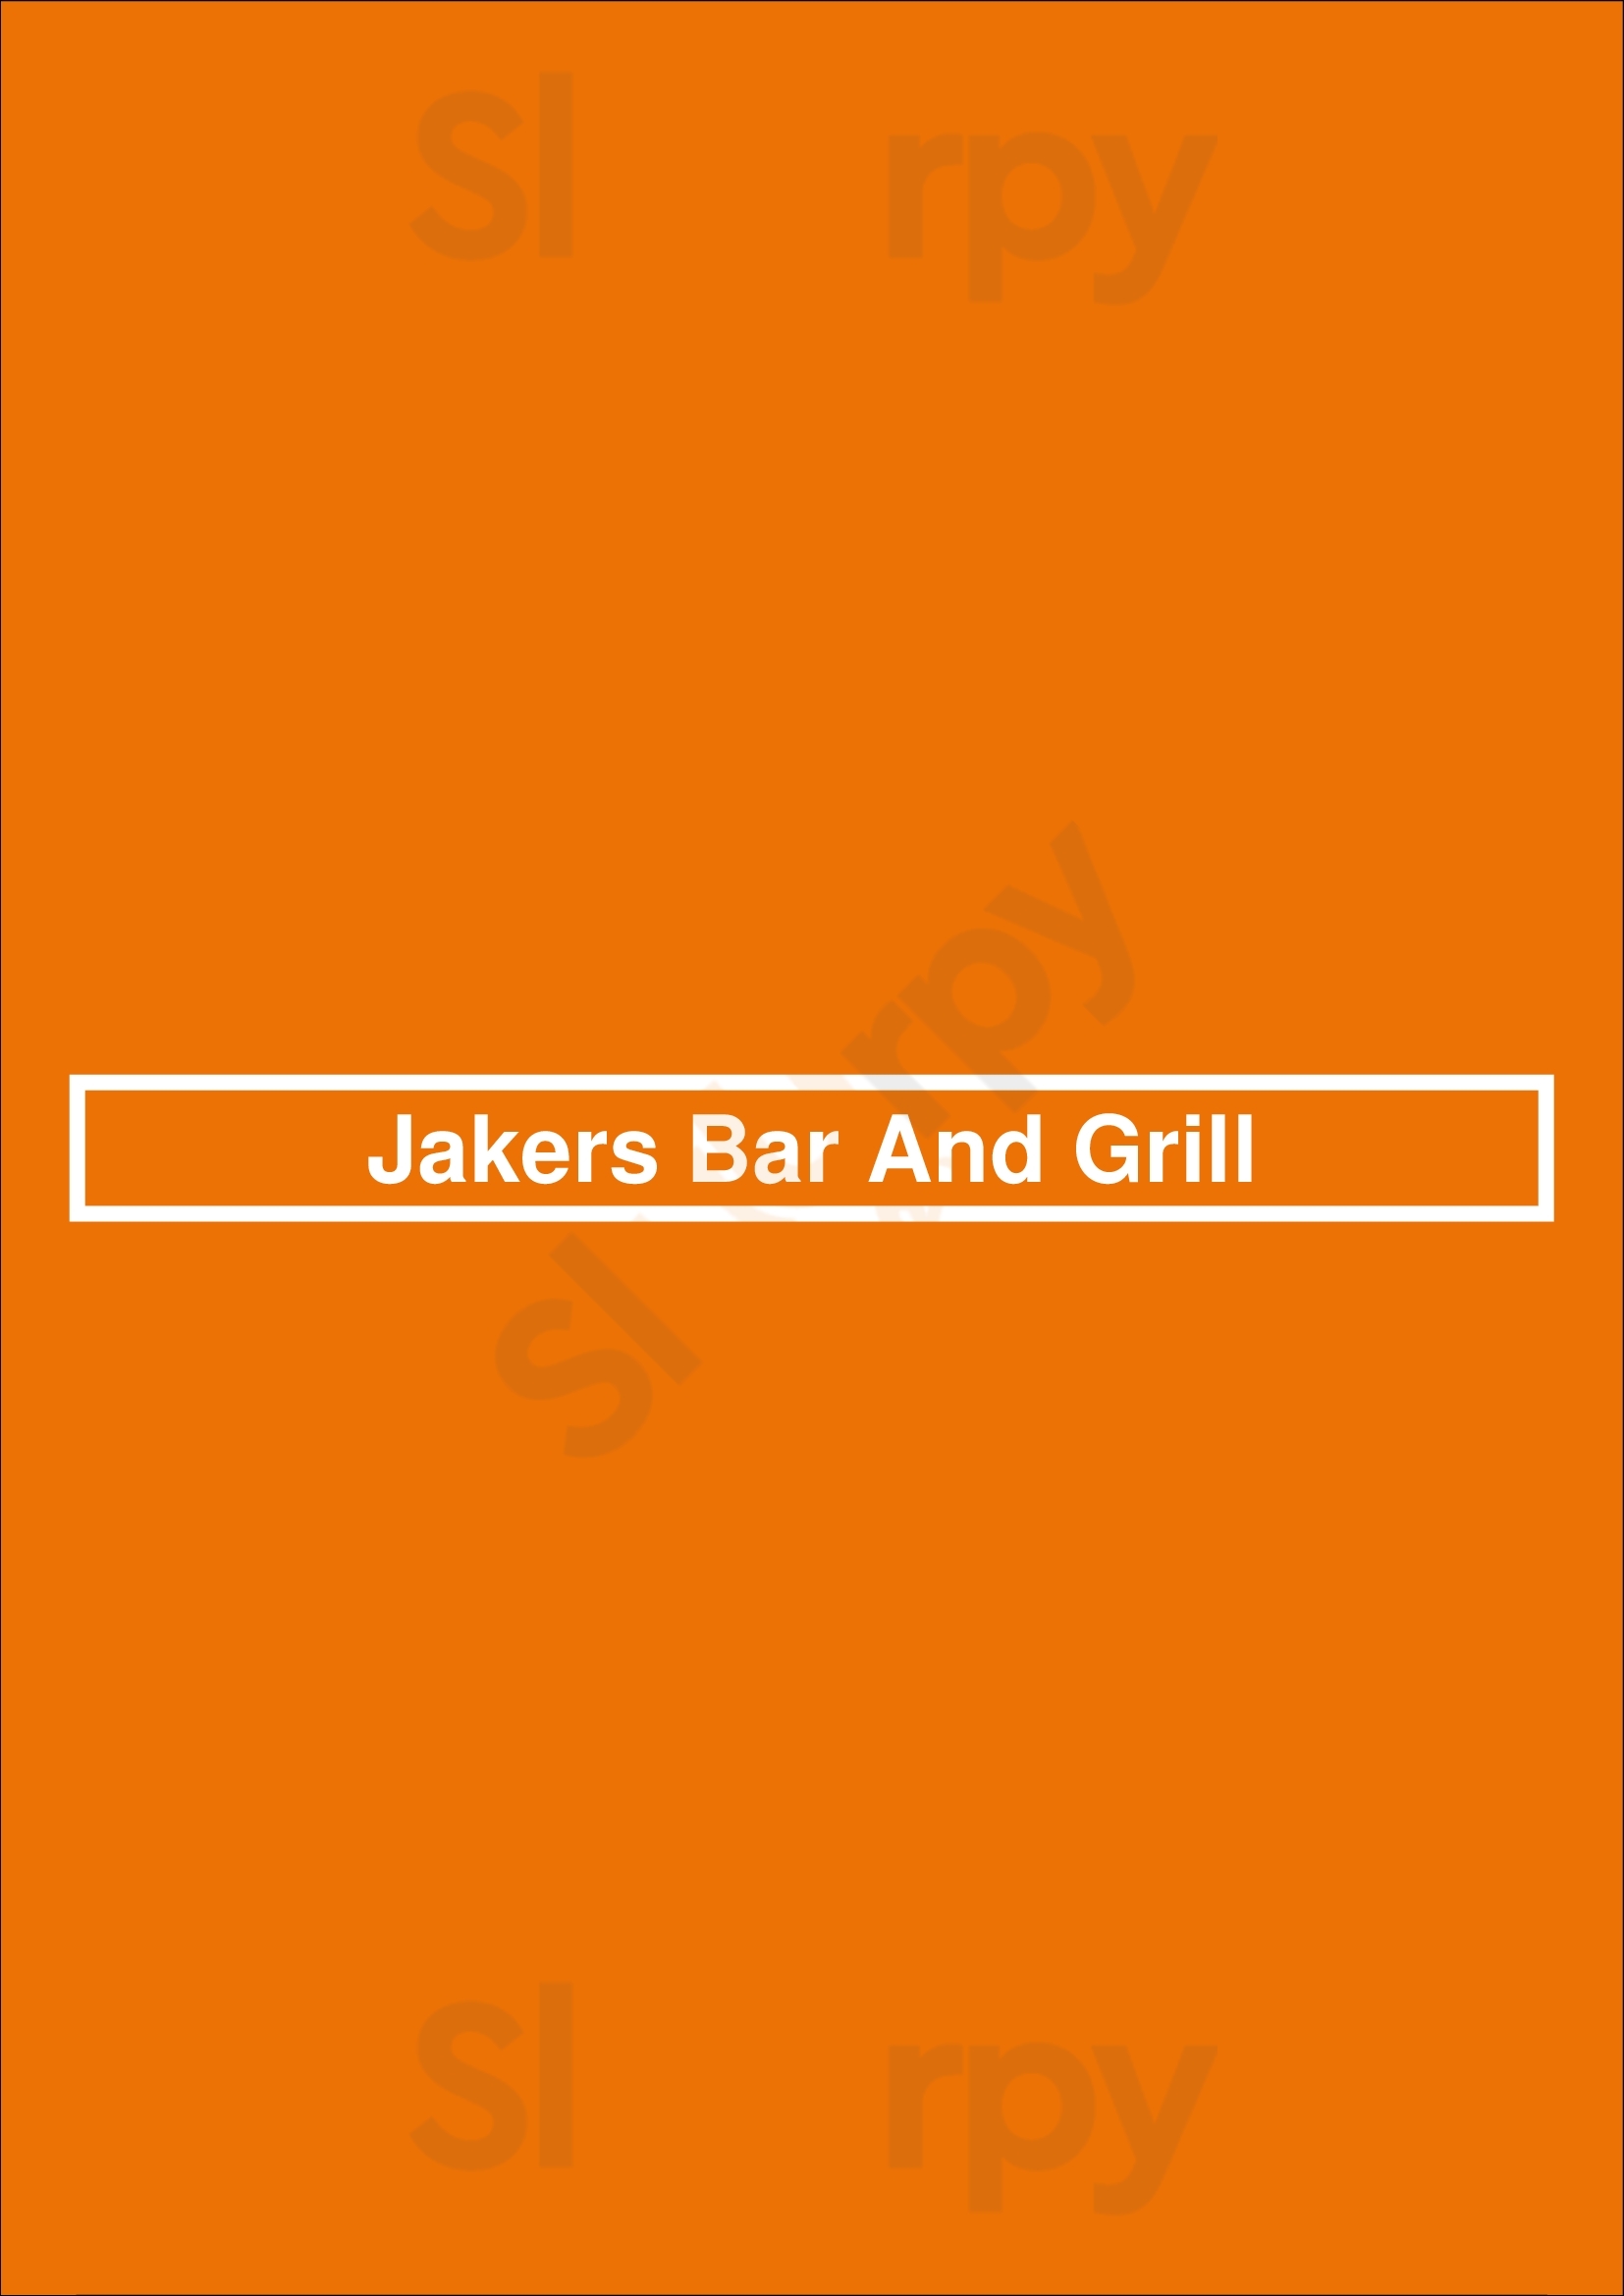 Jakers Bar And Grill Idaho Falls Menu - 1